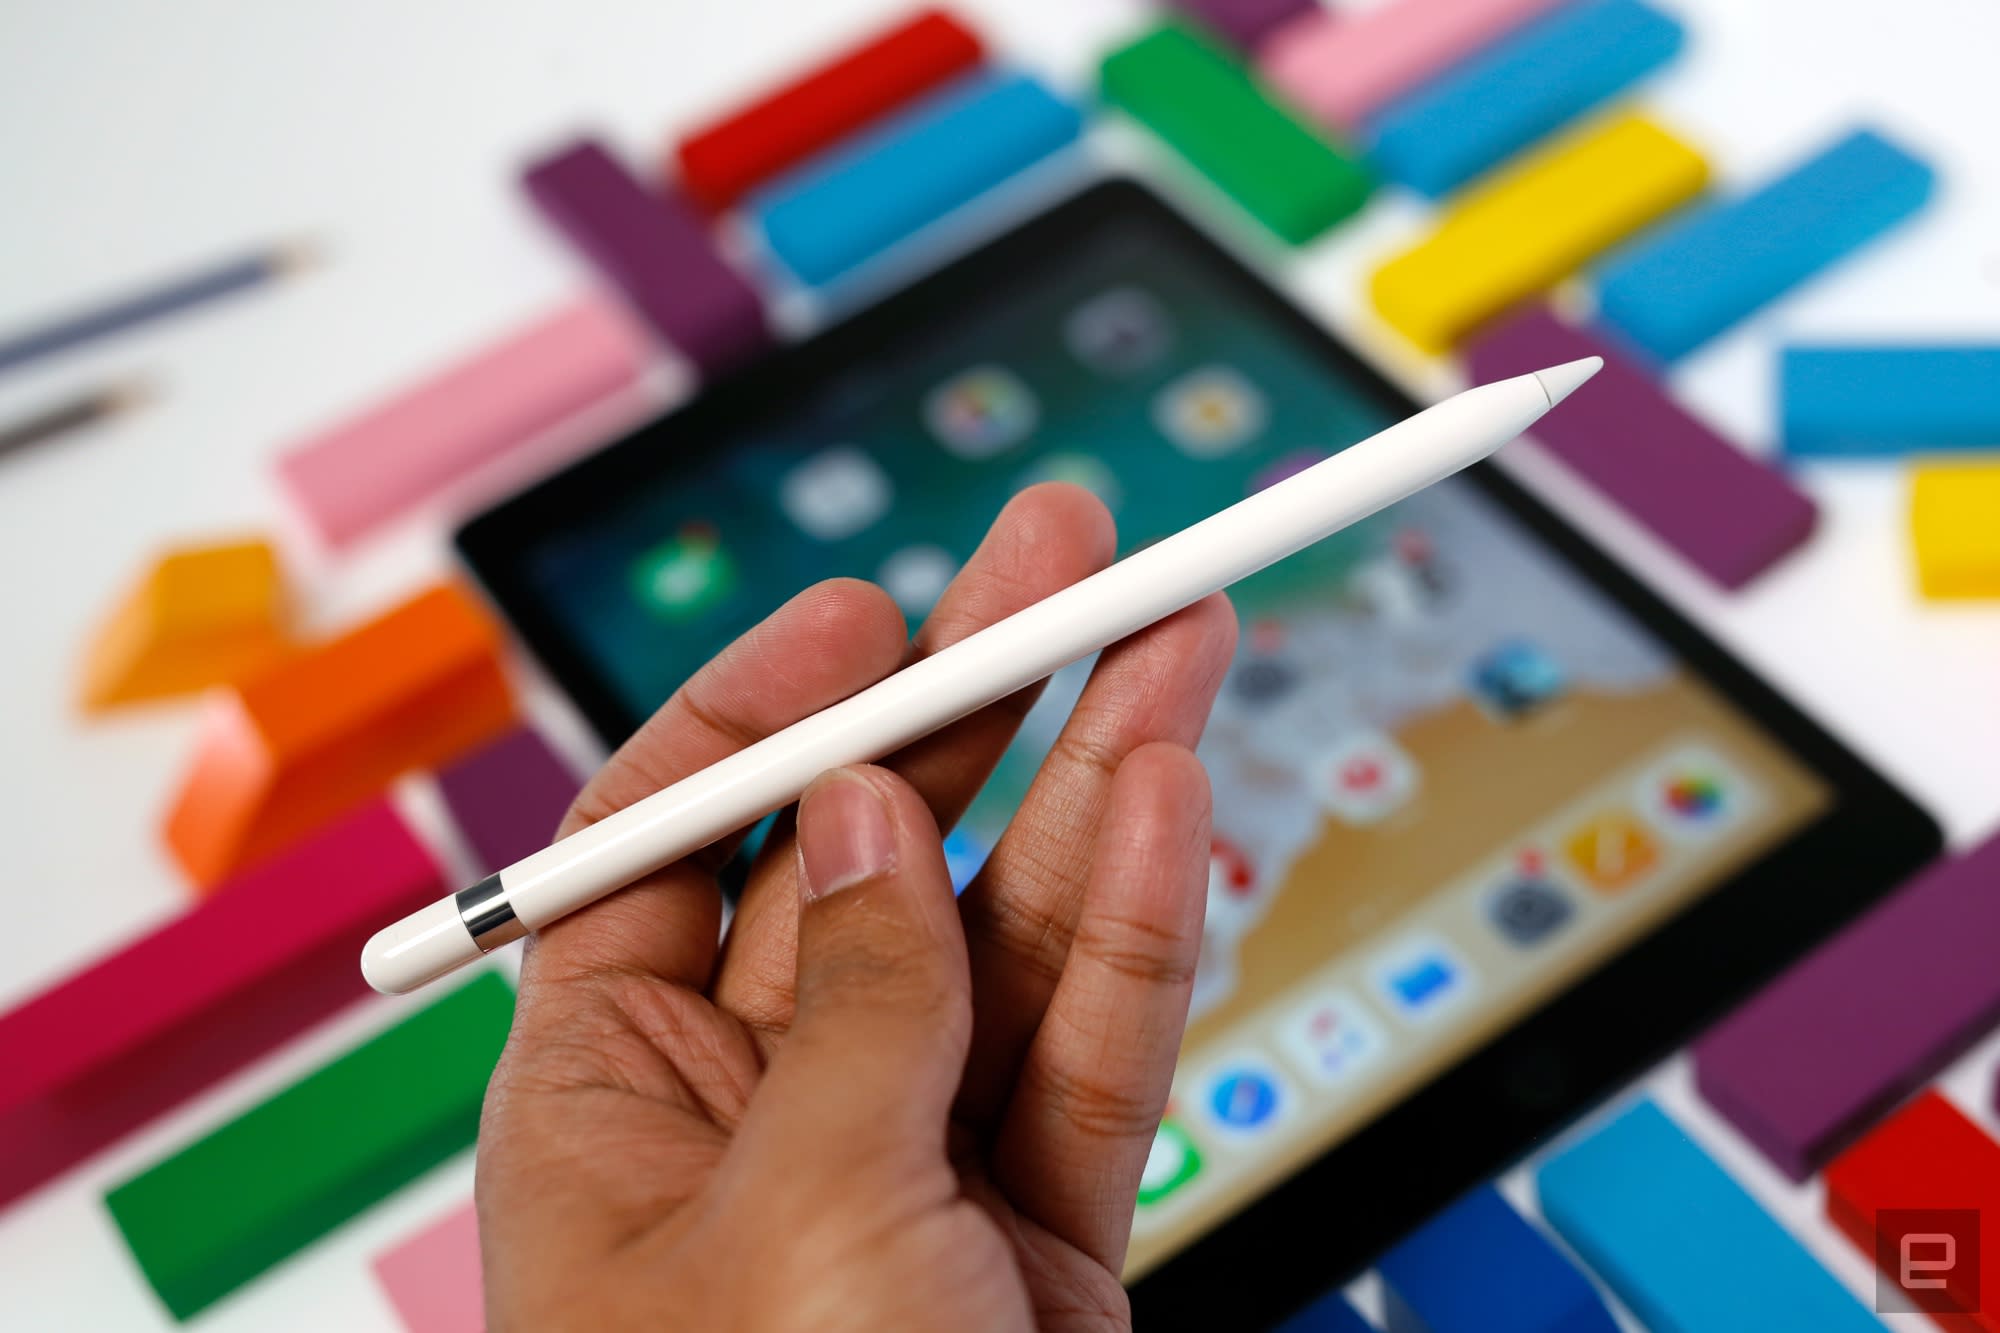 Pencil windows. Apple Pencil. Самый дешевый IPAD С поддержкой Apple Pencil. Игры с эпл пенсил. Apple Pencil Айпада самый дешевый 2020 года.